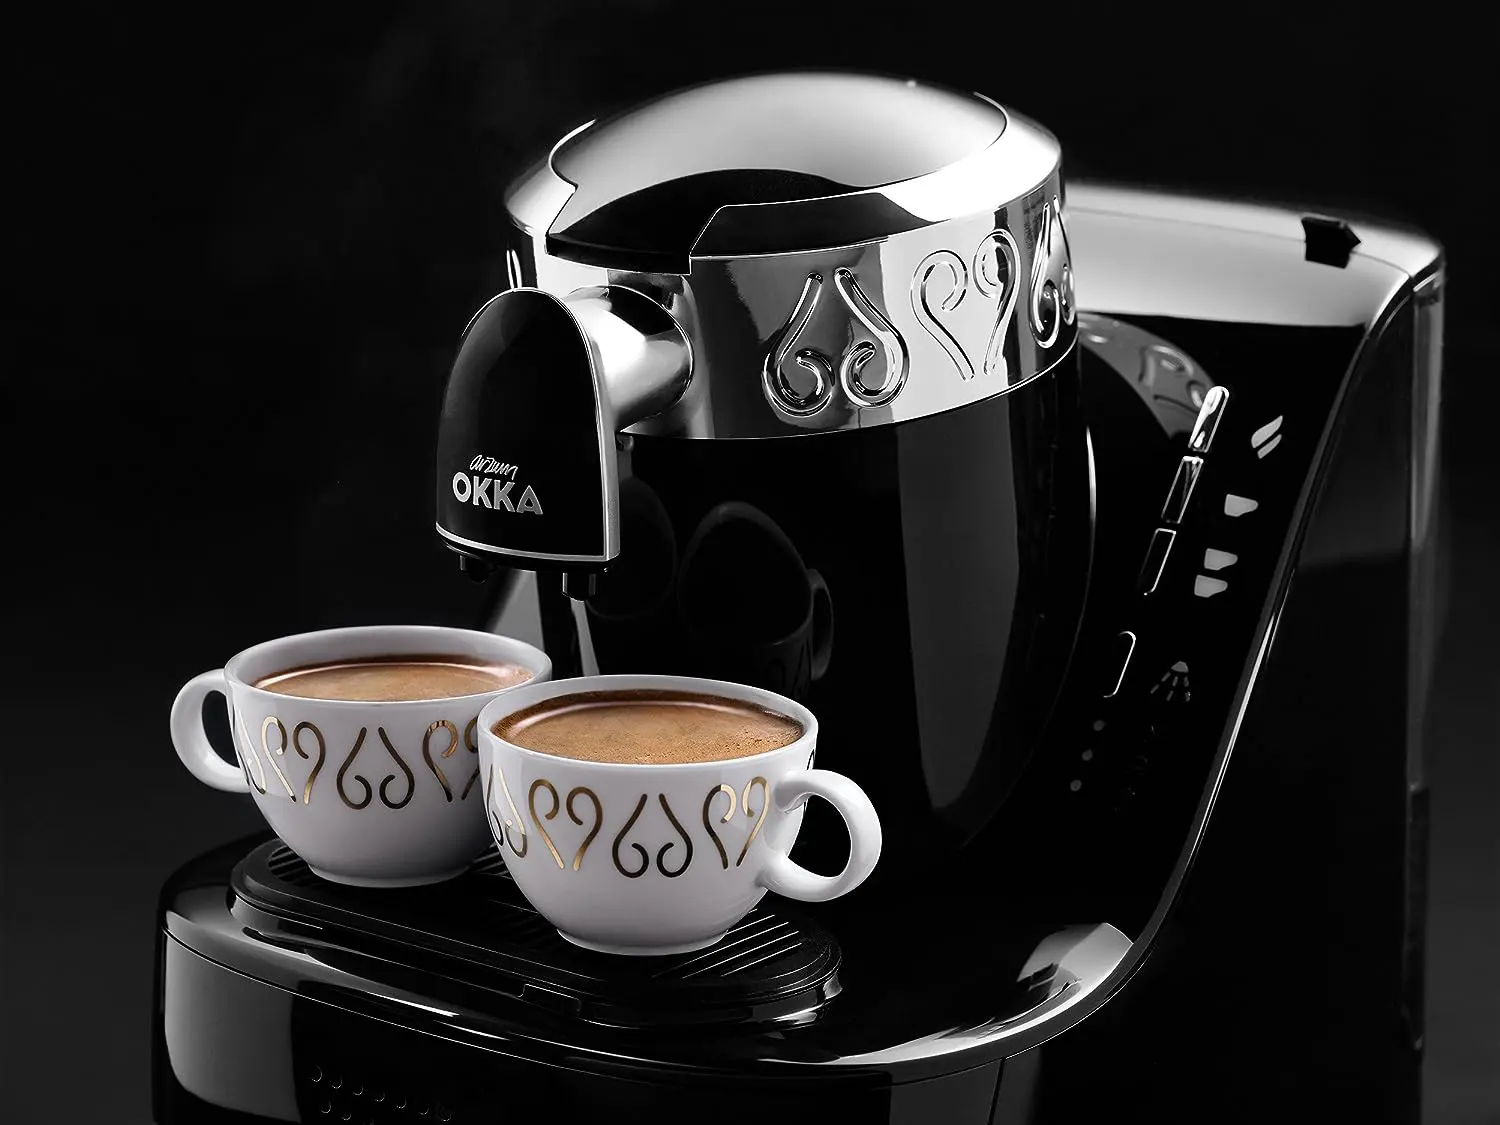 ماكينة تحضير القهوة التركي ارزوم اوكا، 710 وات، أسود × فضي ،OK002